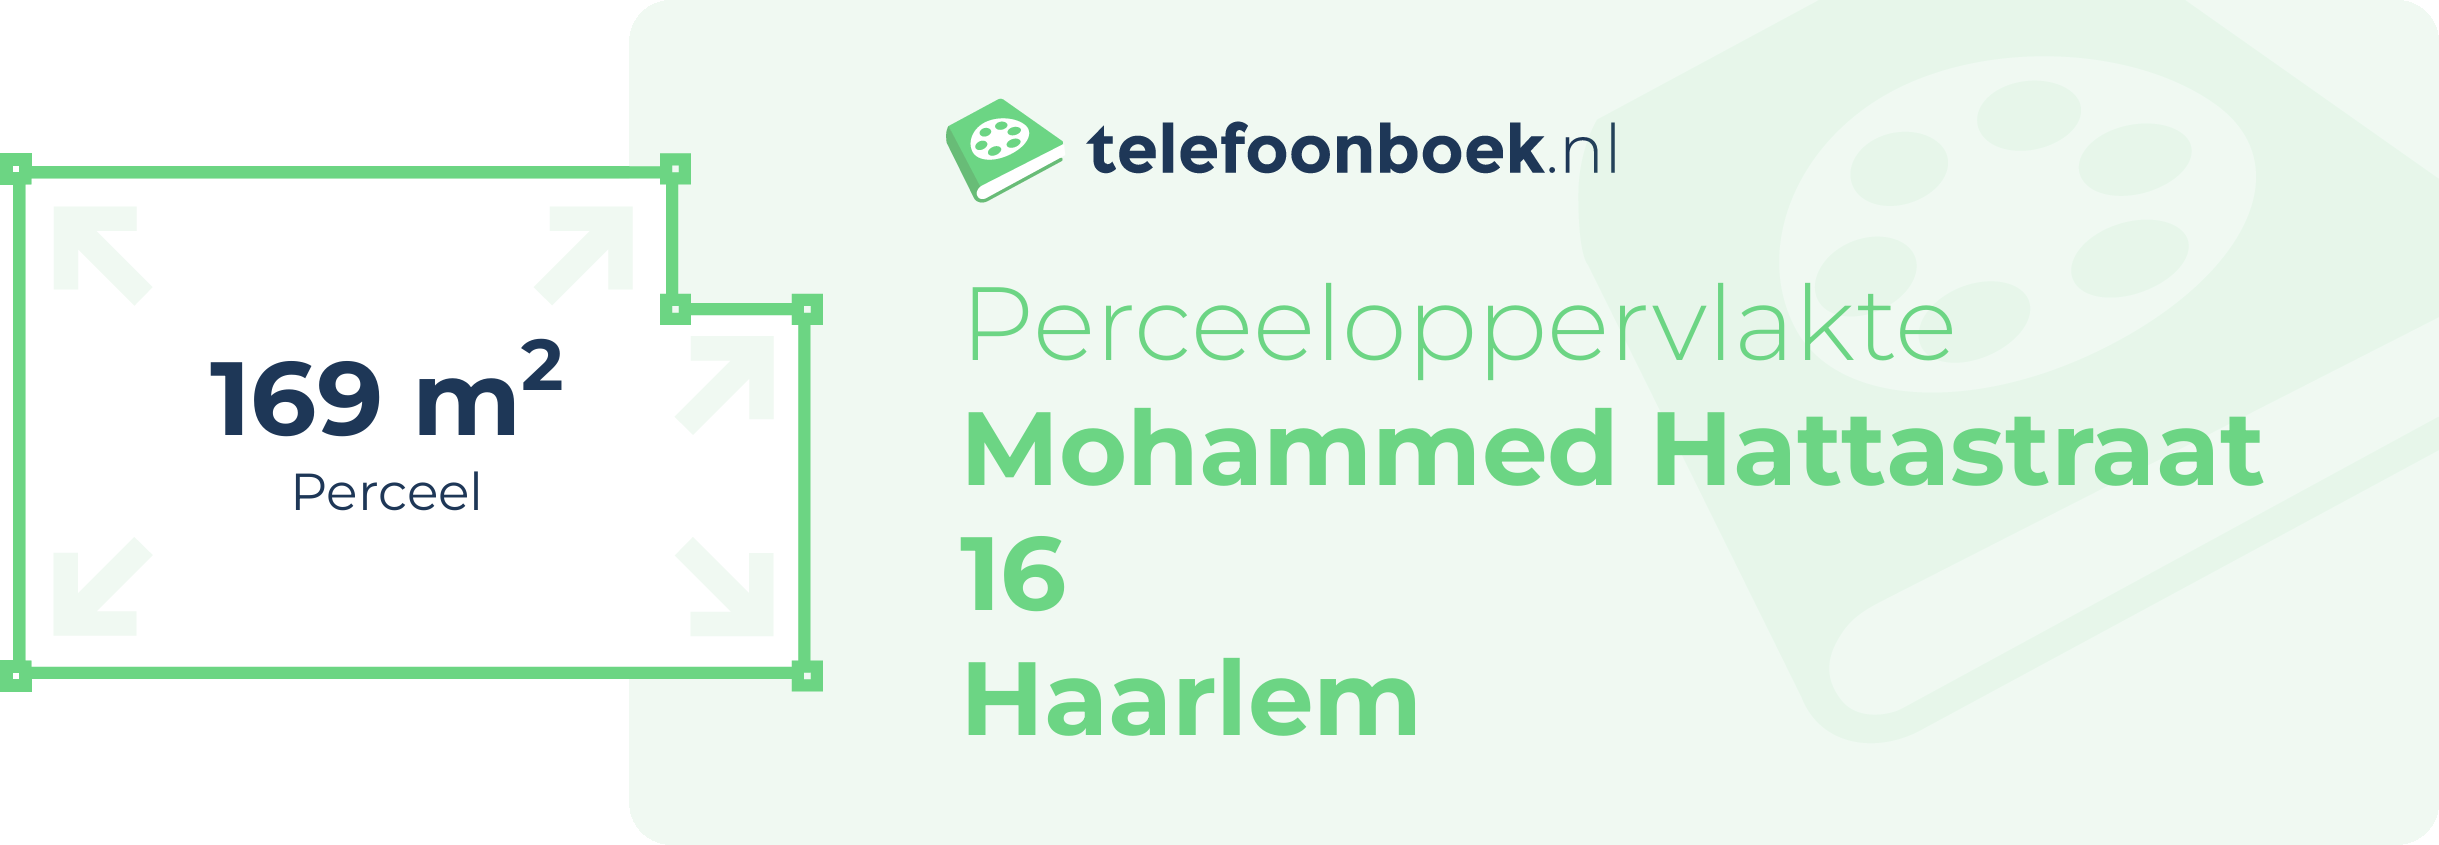 Perceeloppervlakte Mohammed Hattastraat 16 Haarlem